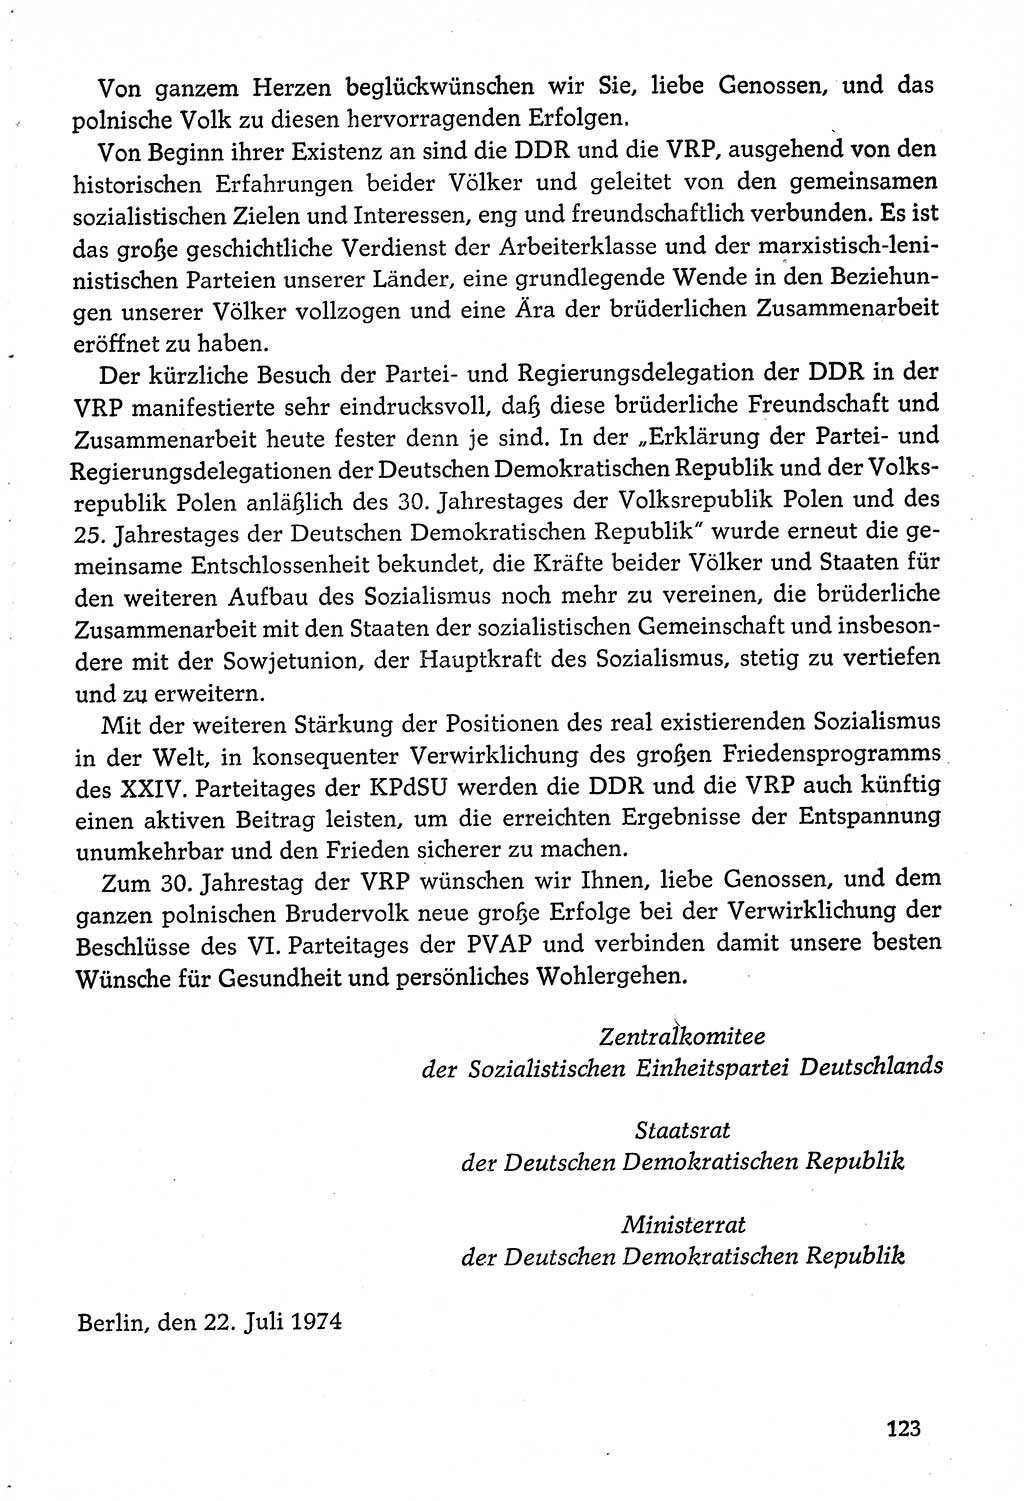 Dokumente der Sozialistischen Einheitspartei Deutschlands (SED) [Deutsche Demokratische Republik (DDR)] 1974-1975, Seite 123 (Dok. SED DDR 1978, Bd. ⅩⅤ, S. 123)